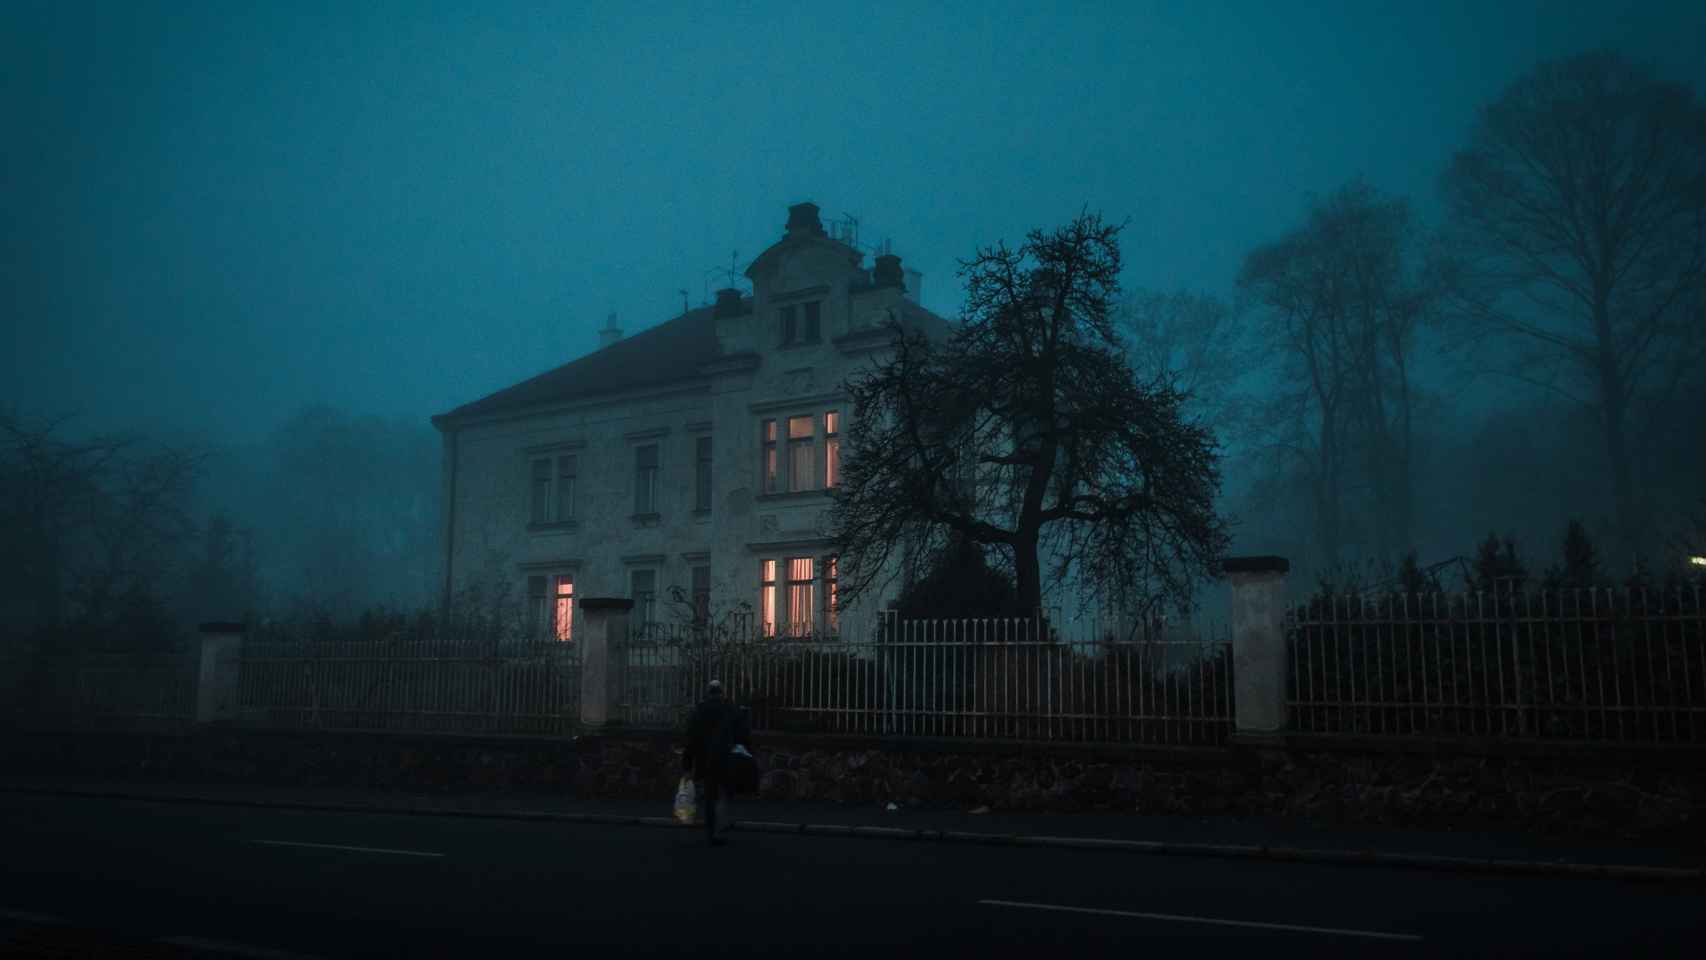 Una casa de noche en imagen de archivo.